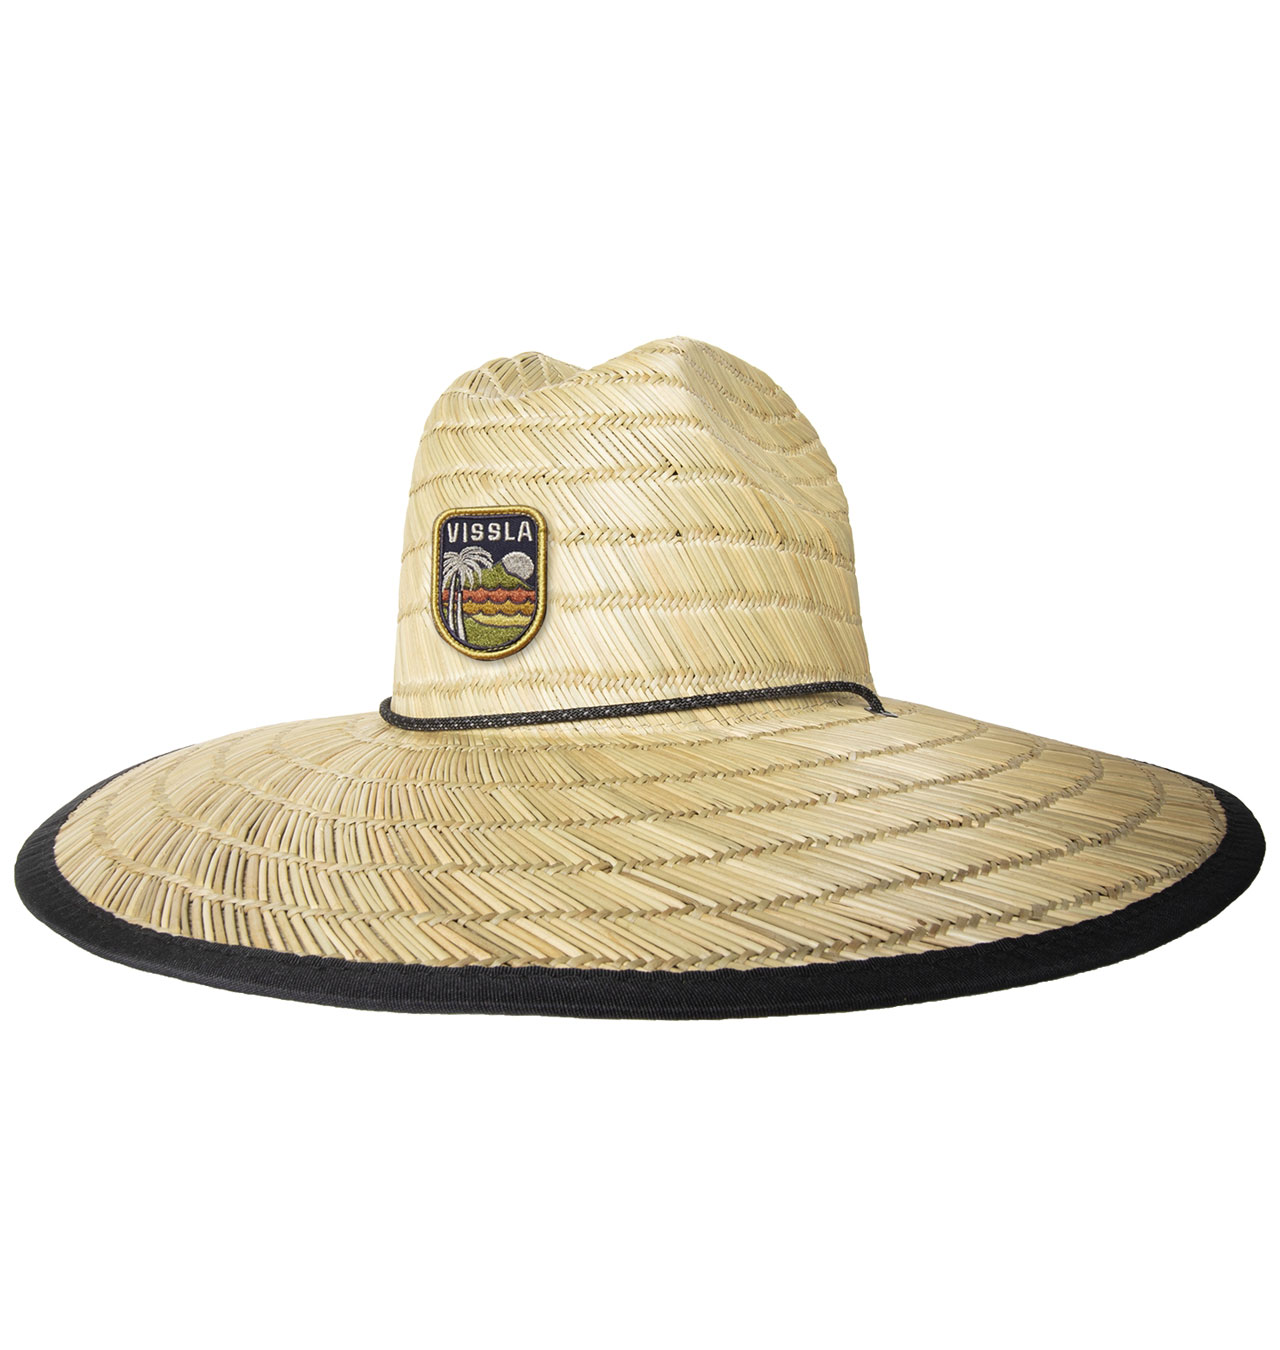 Vissla - Outside Sets Lifeguard Hat - Natural